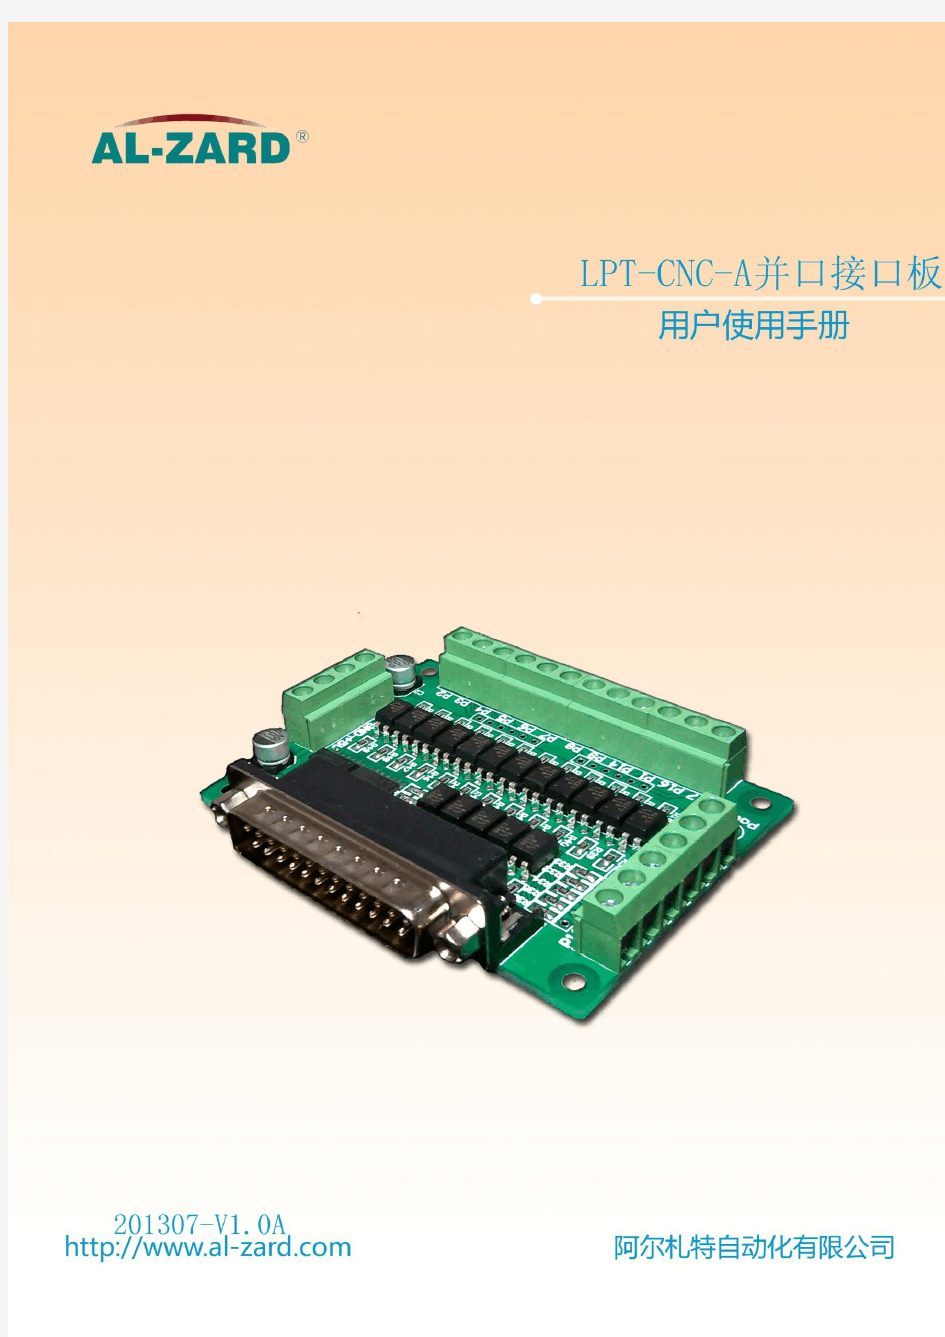 LPT-CNC-A并口接口板使用手册